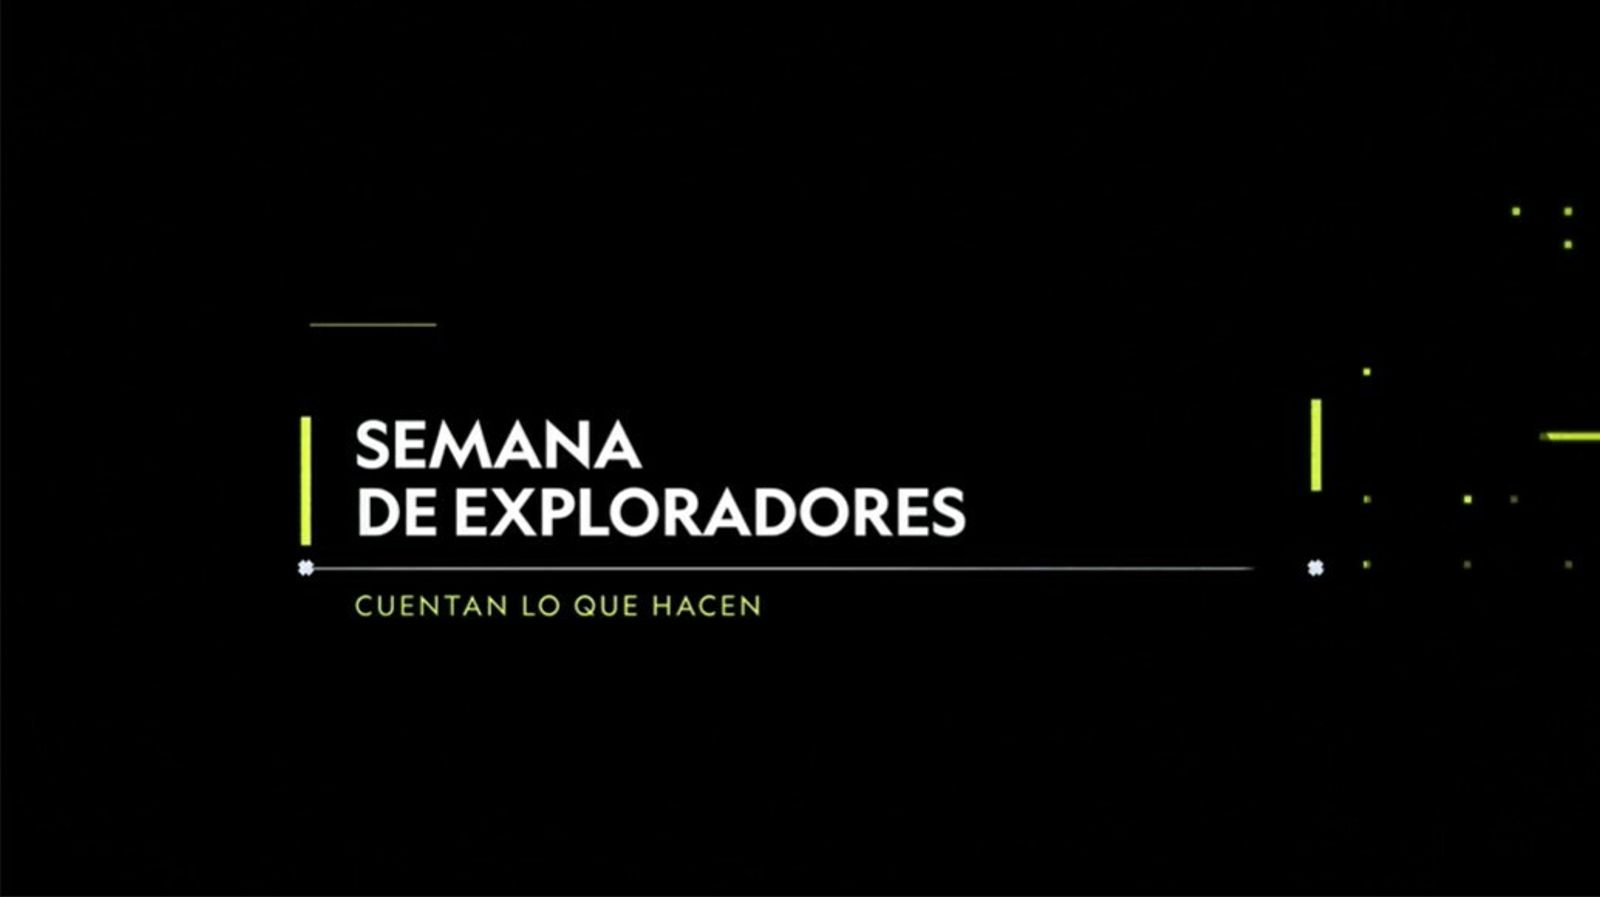 “SEMANA DE LOS EXPLORADORES”: NATIONAL GEOGRAPHIC PRESENTÓ EL TRABAJO DE 16 EXPLORADORES LATINOAMERICANOS EN UN EVENTO VIRTUAL PARA TODA LA AUDIENCIA